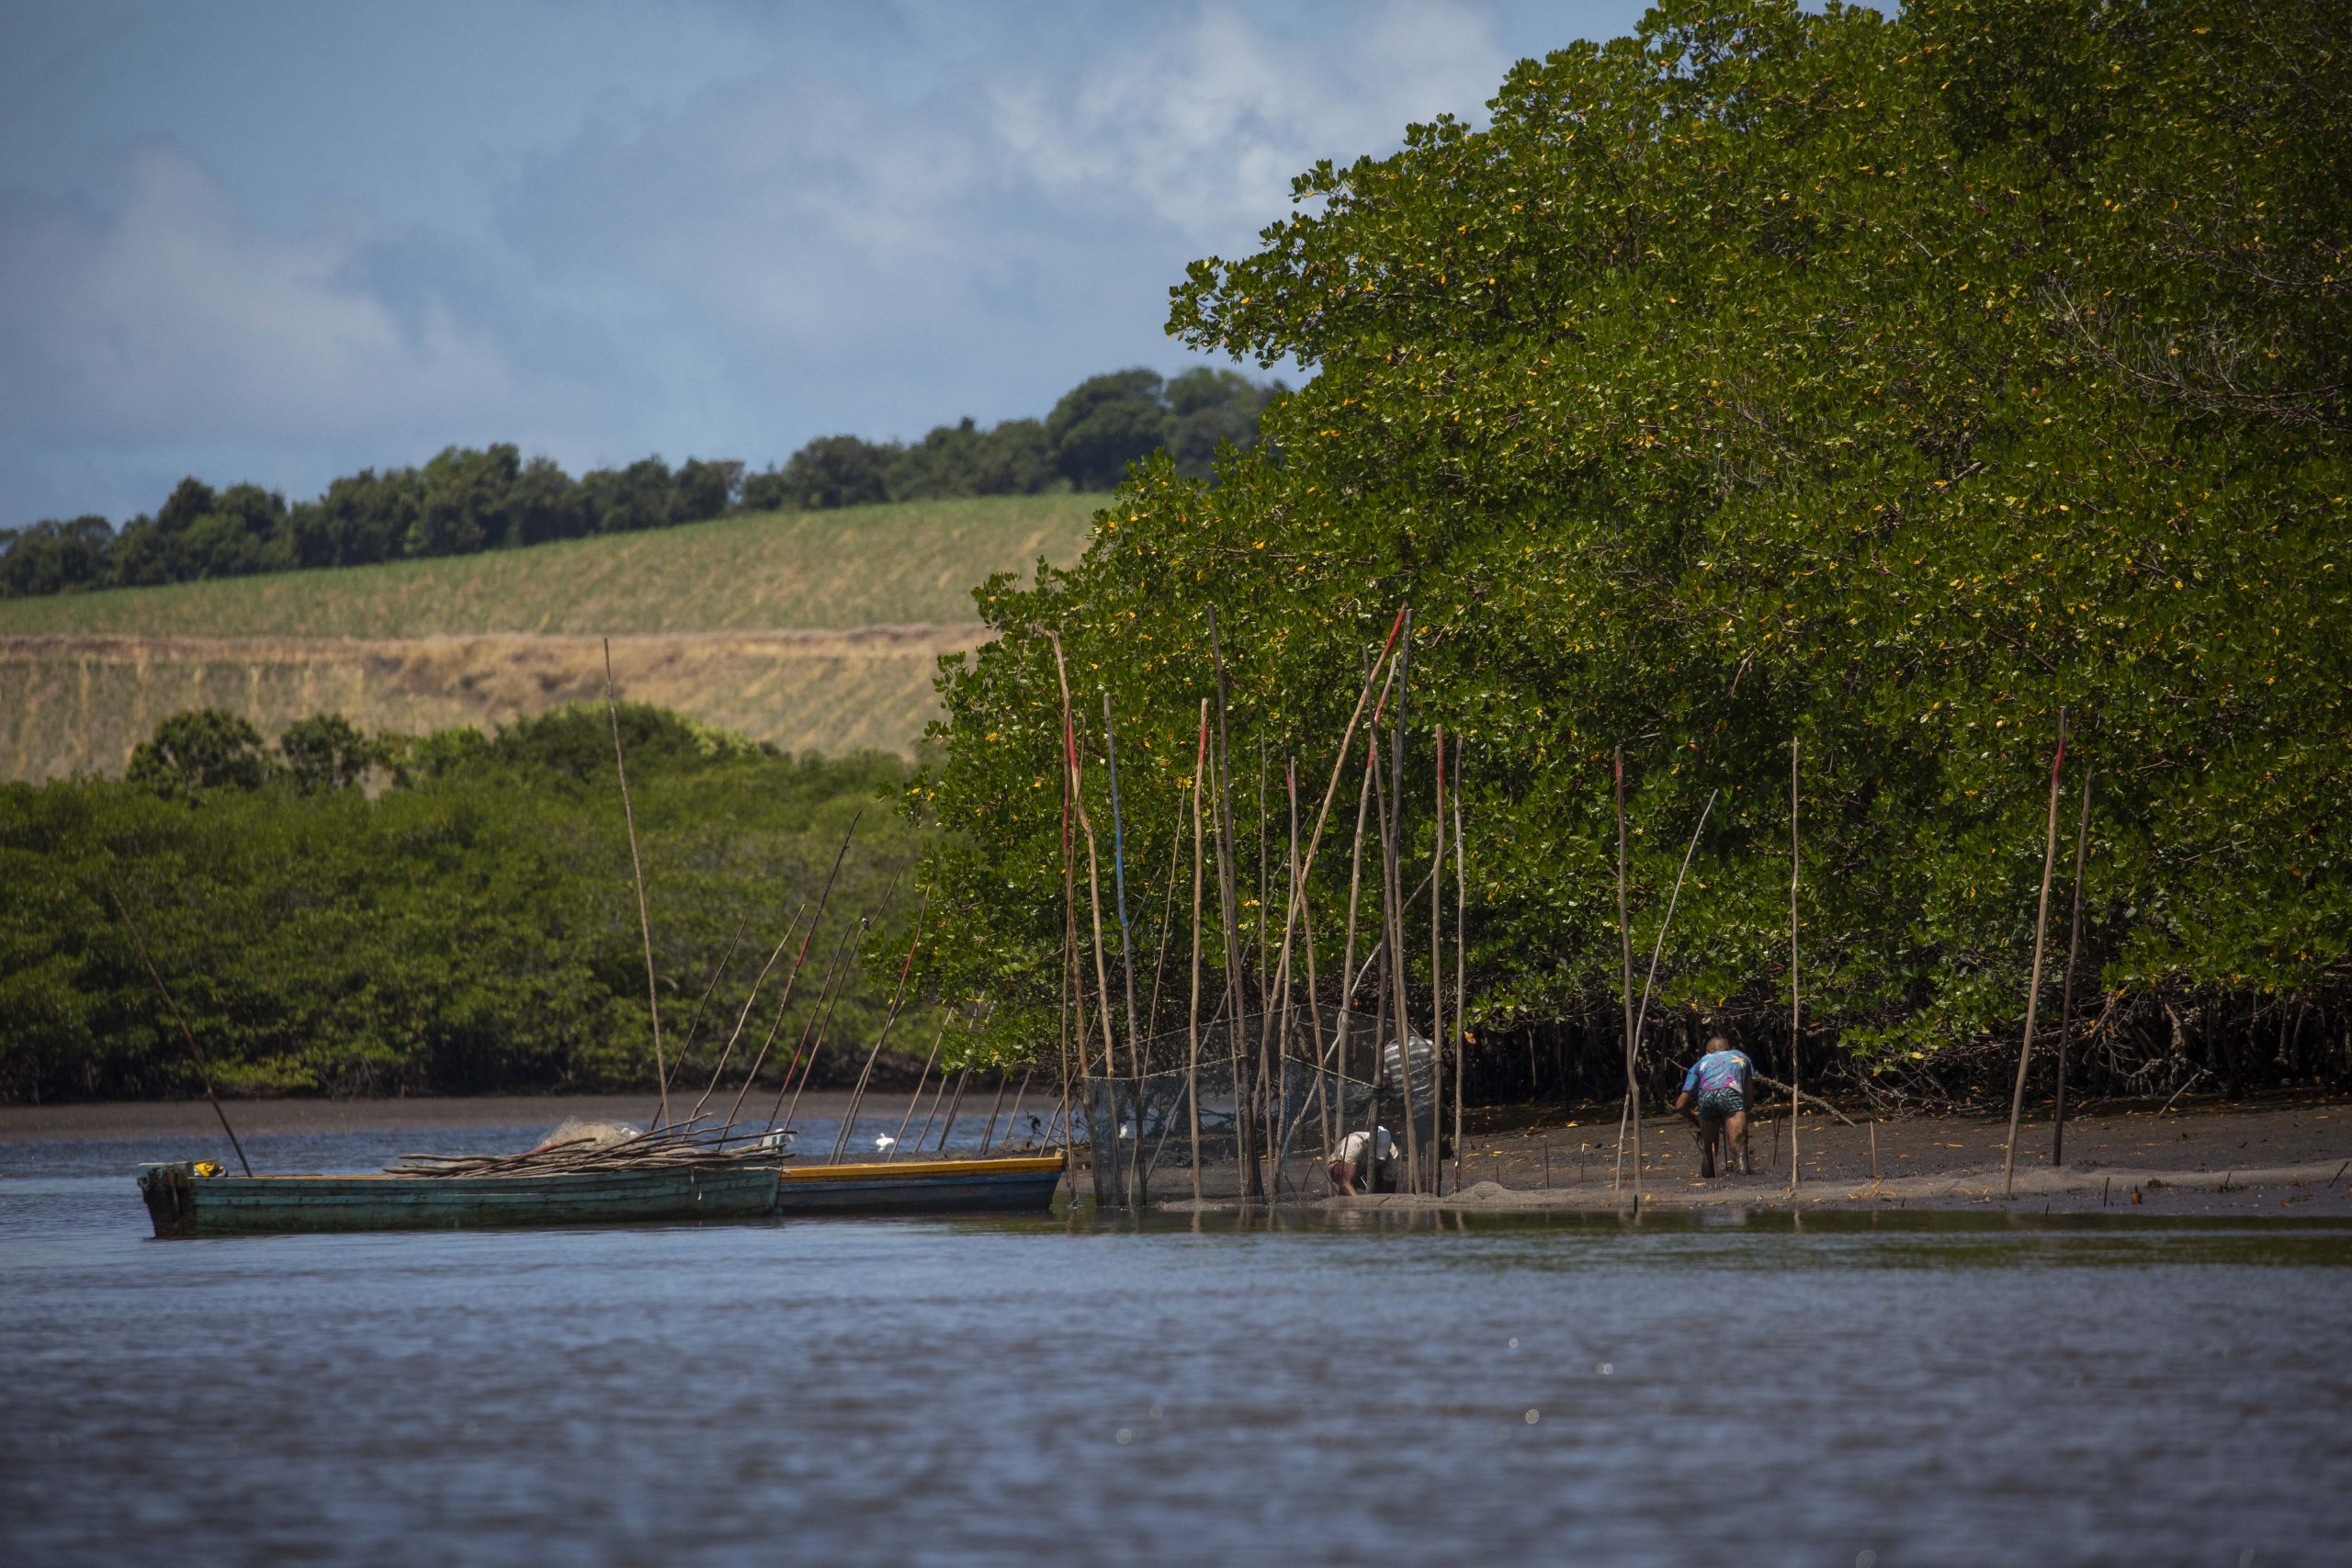 Imagens dos trabalhos de monitoramento de Beatrice Padovani e sua equipe mangue na região do Rio Formoso, em Tamandaré, PE